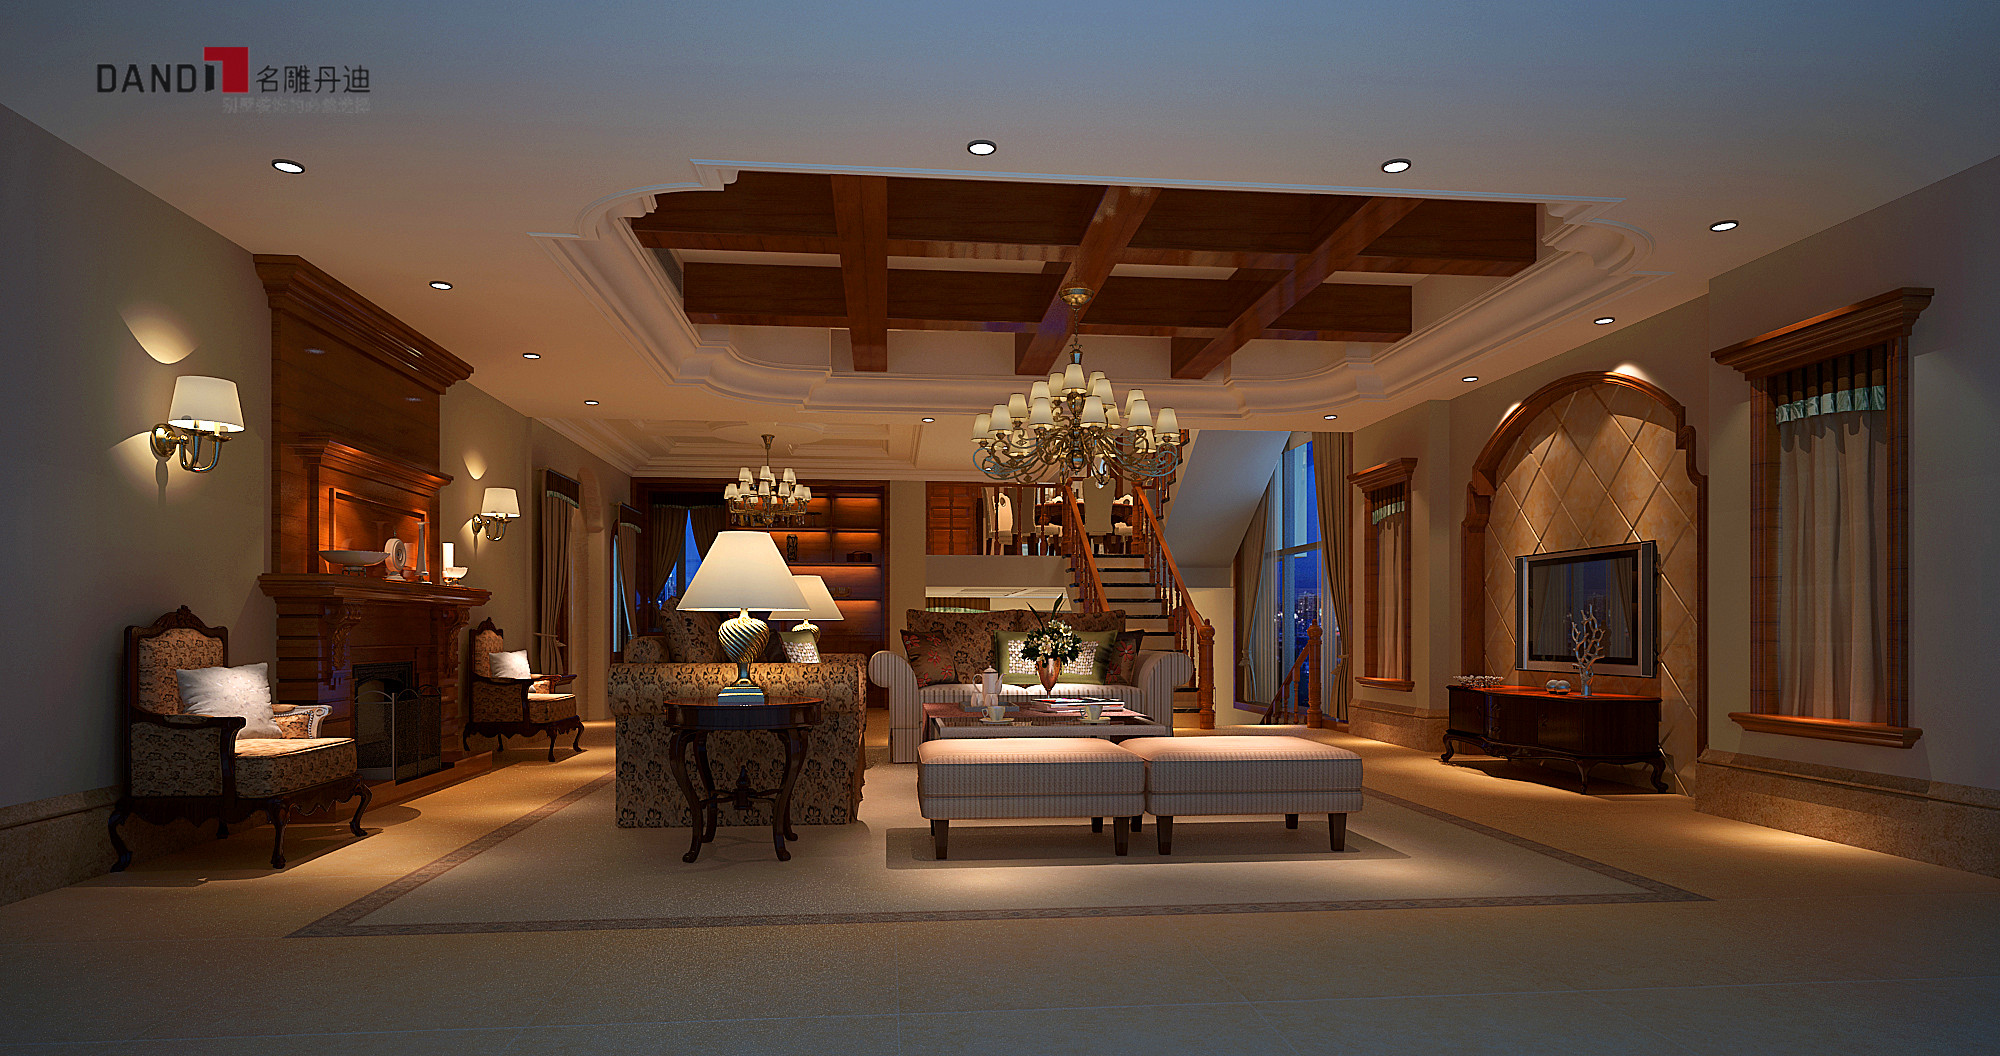 名雕丹迪别墅设计—美式风格客厅:以暖色单一调为主,灯具装饰的是吊灯